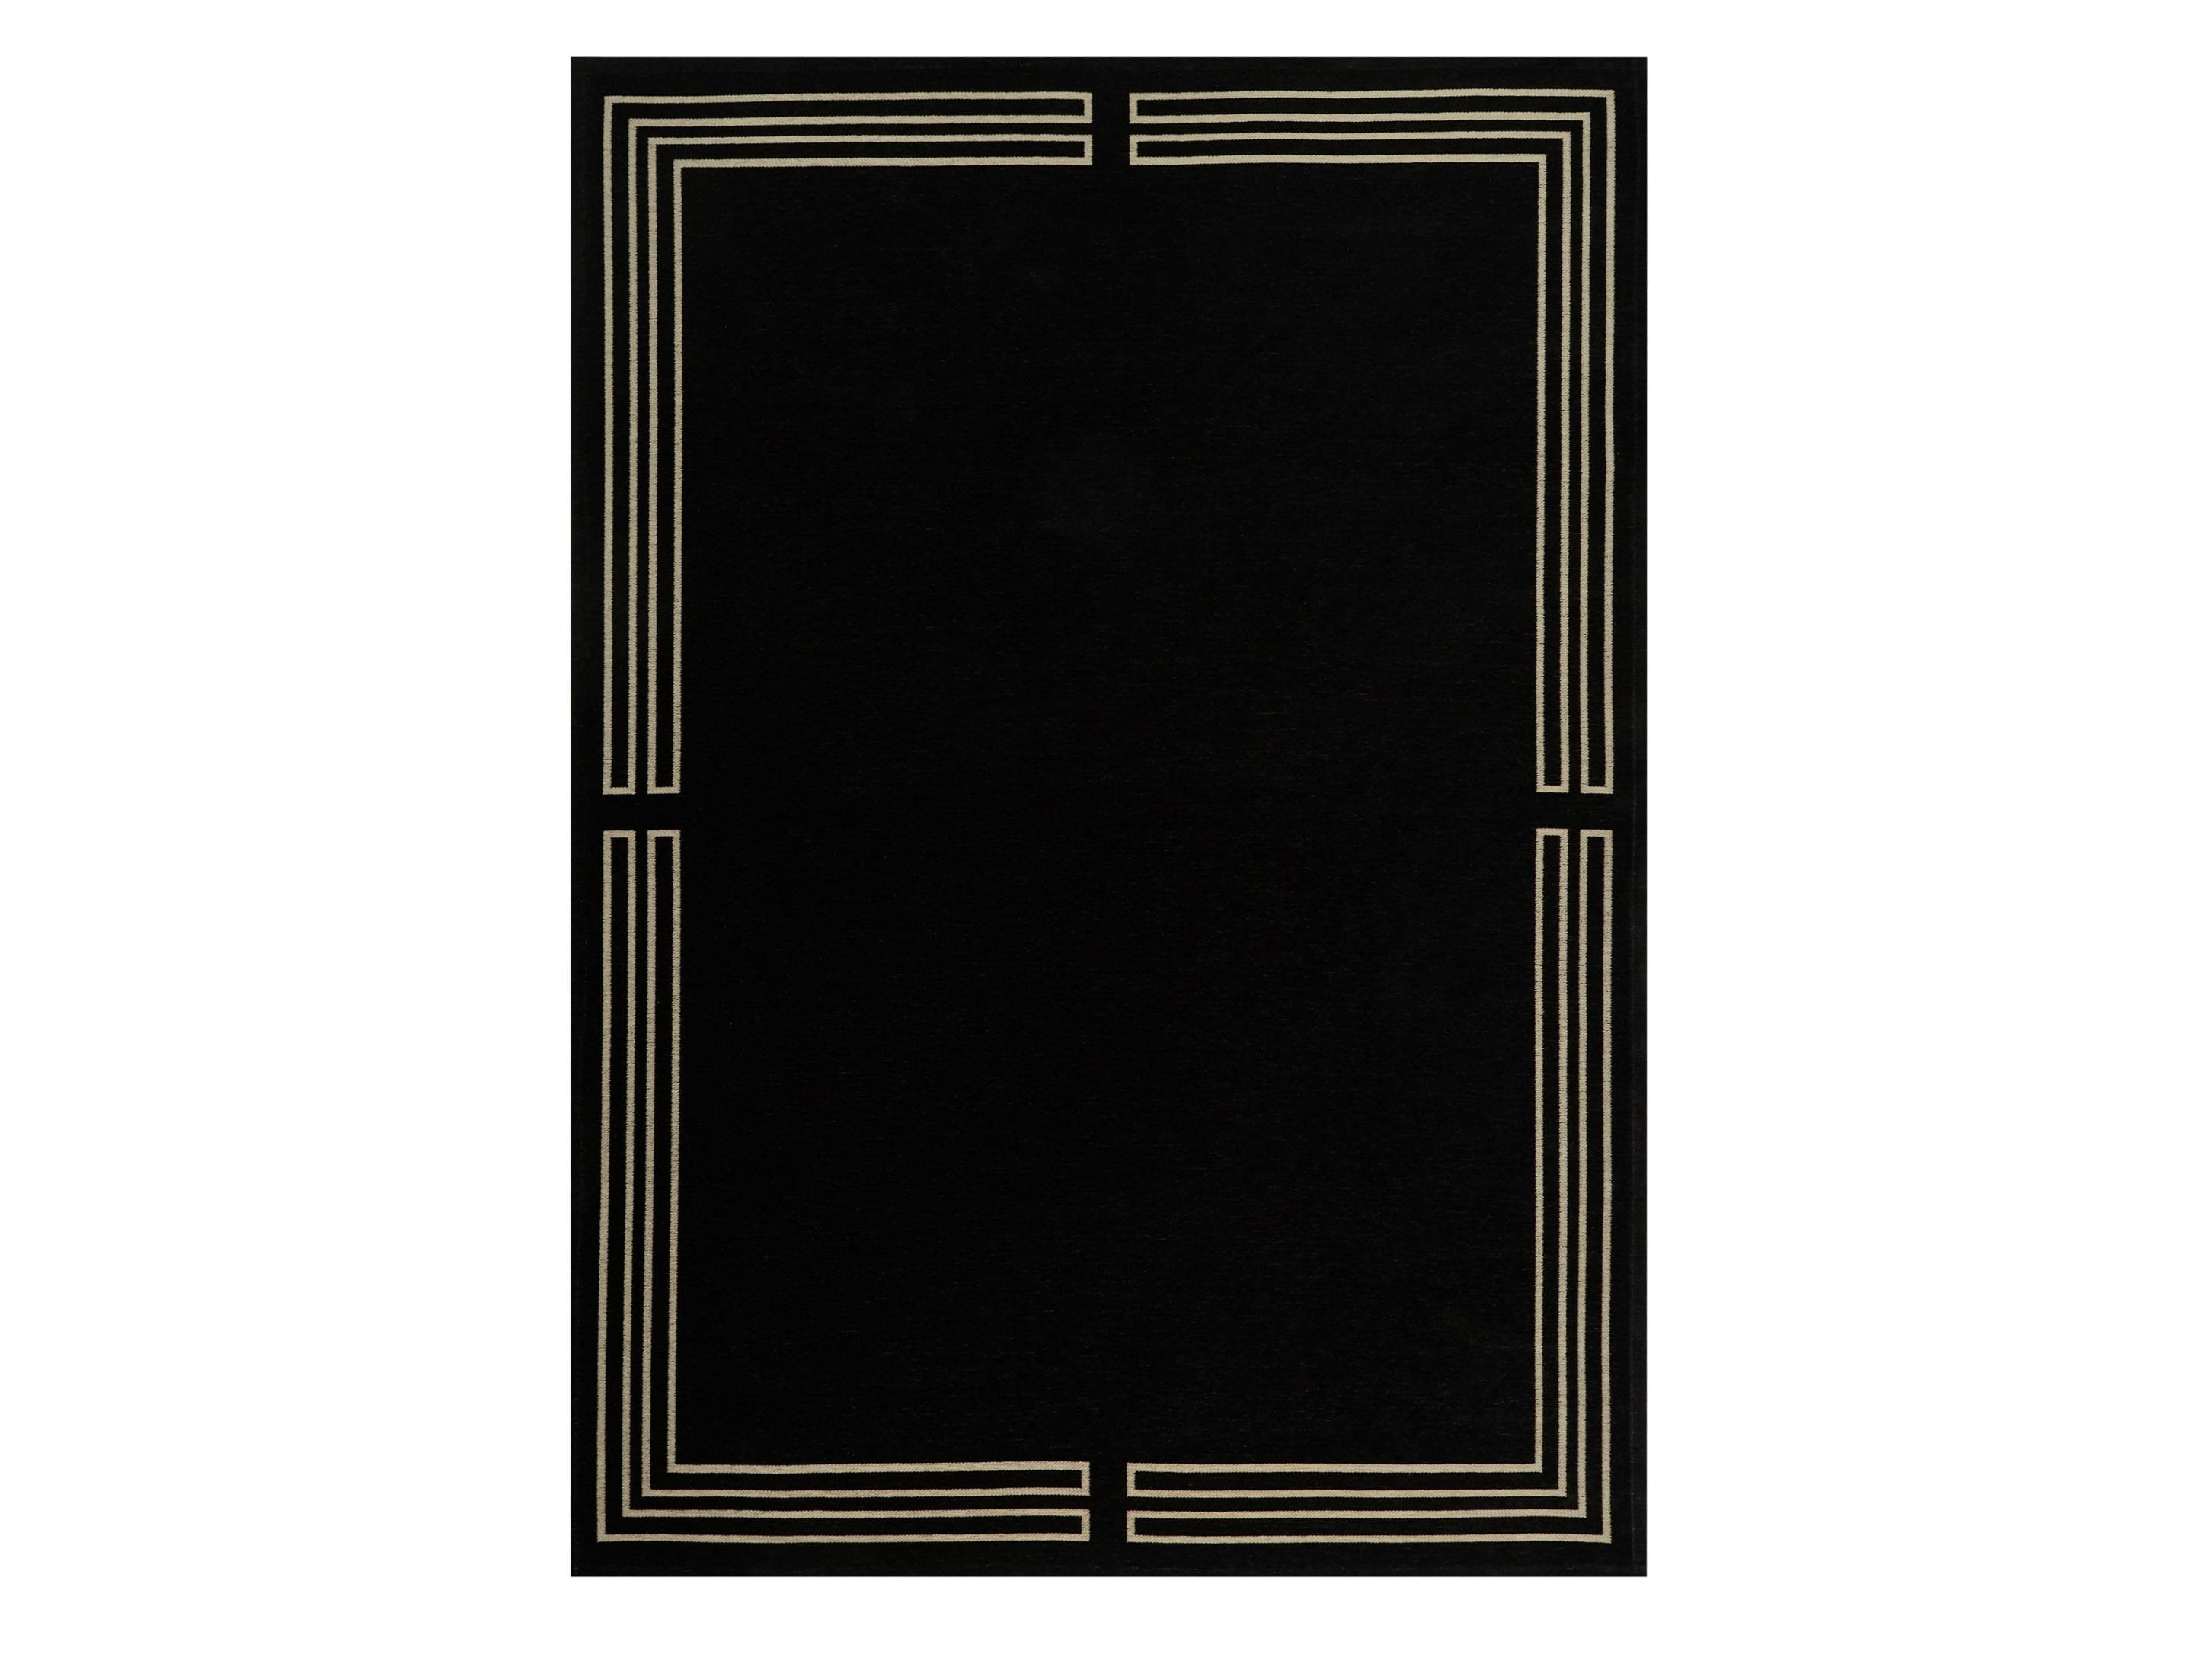 Ковер royal black (carpet decor) черный 200x300 см.